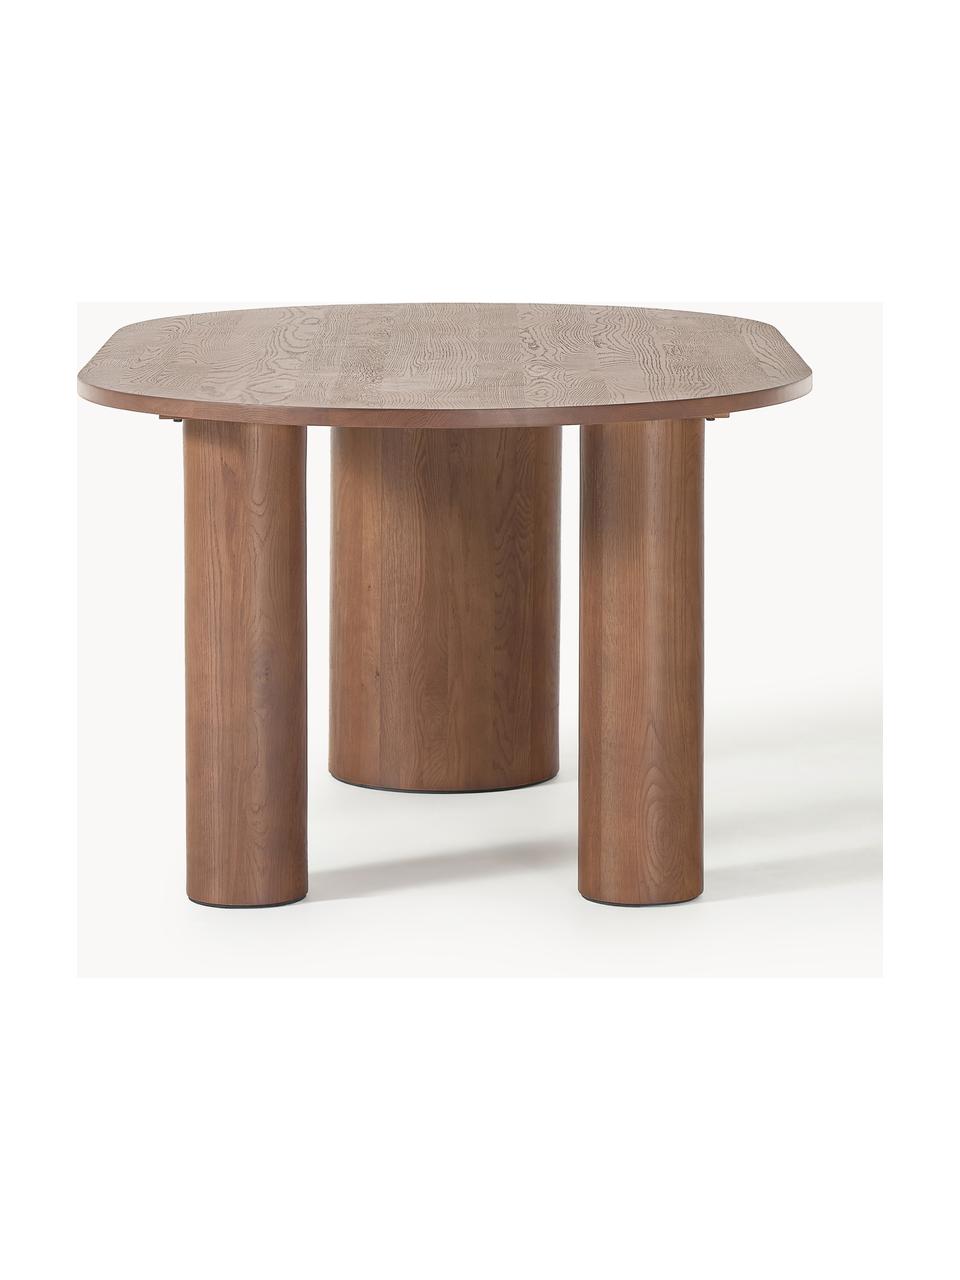 Oválny jedálenský stôl Dunia, 180 x 110 cm, Masívne dubové drevo, ošetrené olejom
Tento produkt je vyrobený z trvalo udržateľného dreva s certifikátom FSC®., Dubové drevo, hnedá ošetrené olejom, Š 180 x H 110 cm